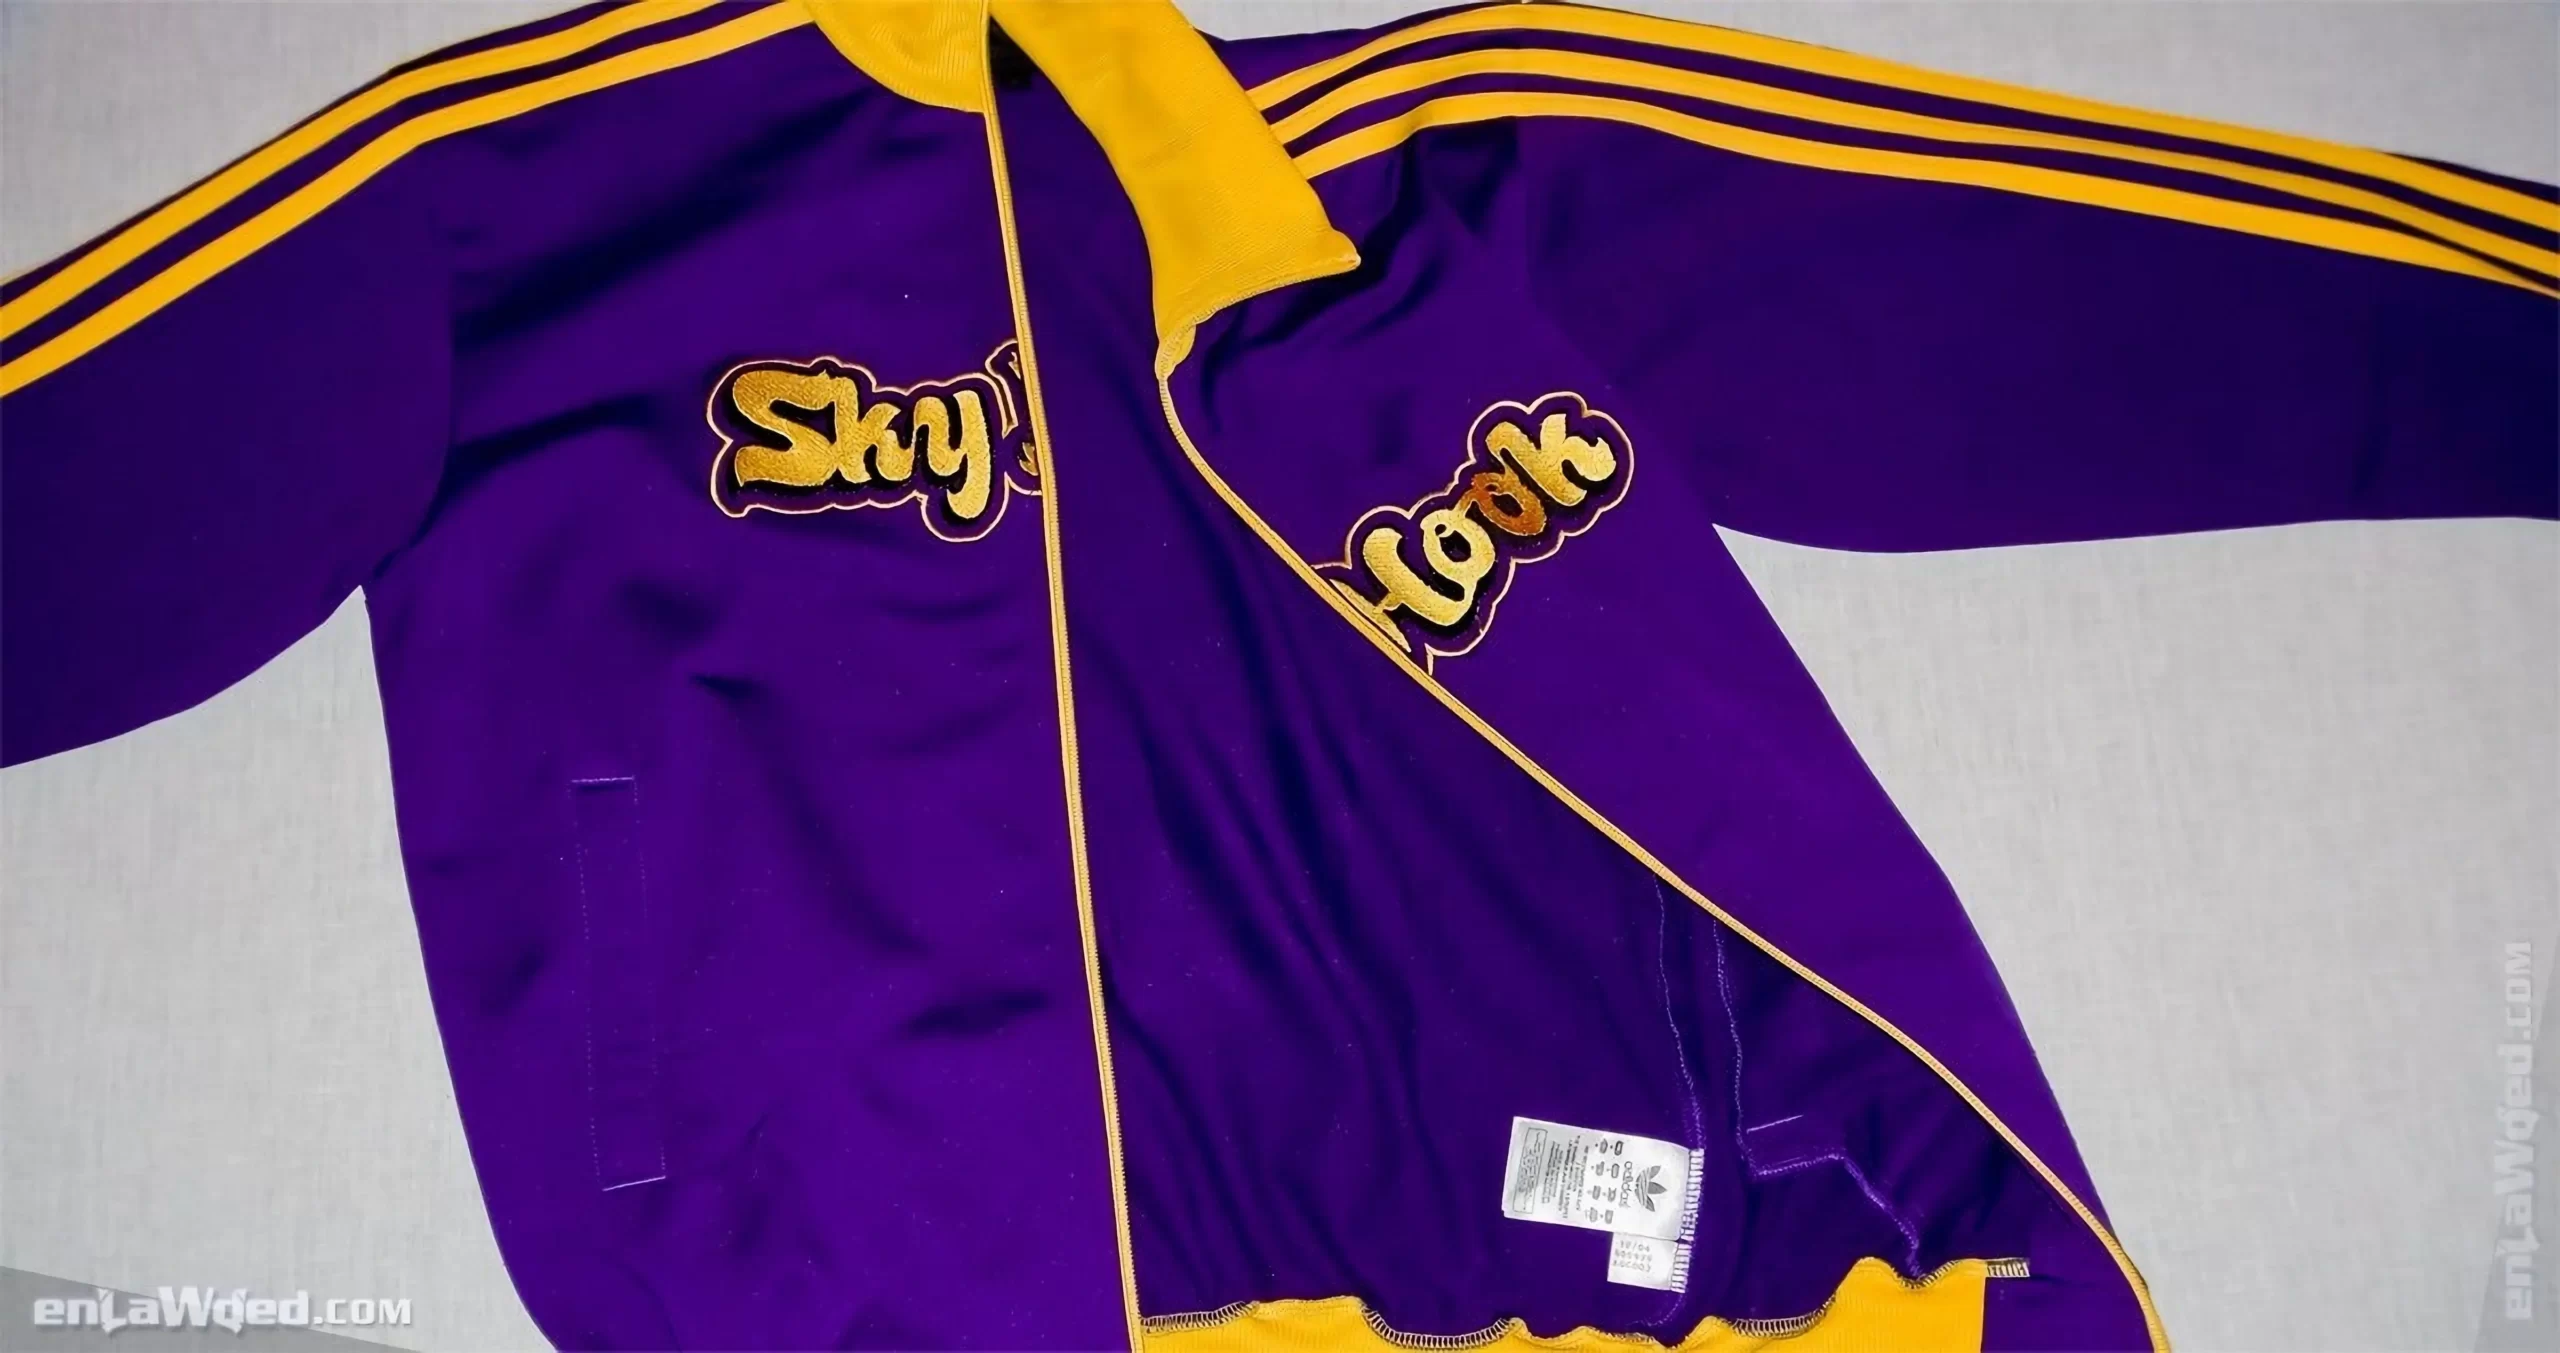 Men’s 2004 SkyHook Lakers #33 Track Top by Adidas: Rookie (EnLawded.com file #lmchk90367ip2y124419kg9st)